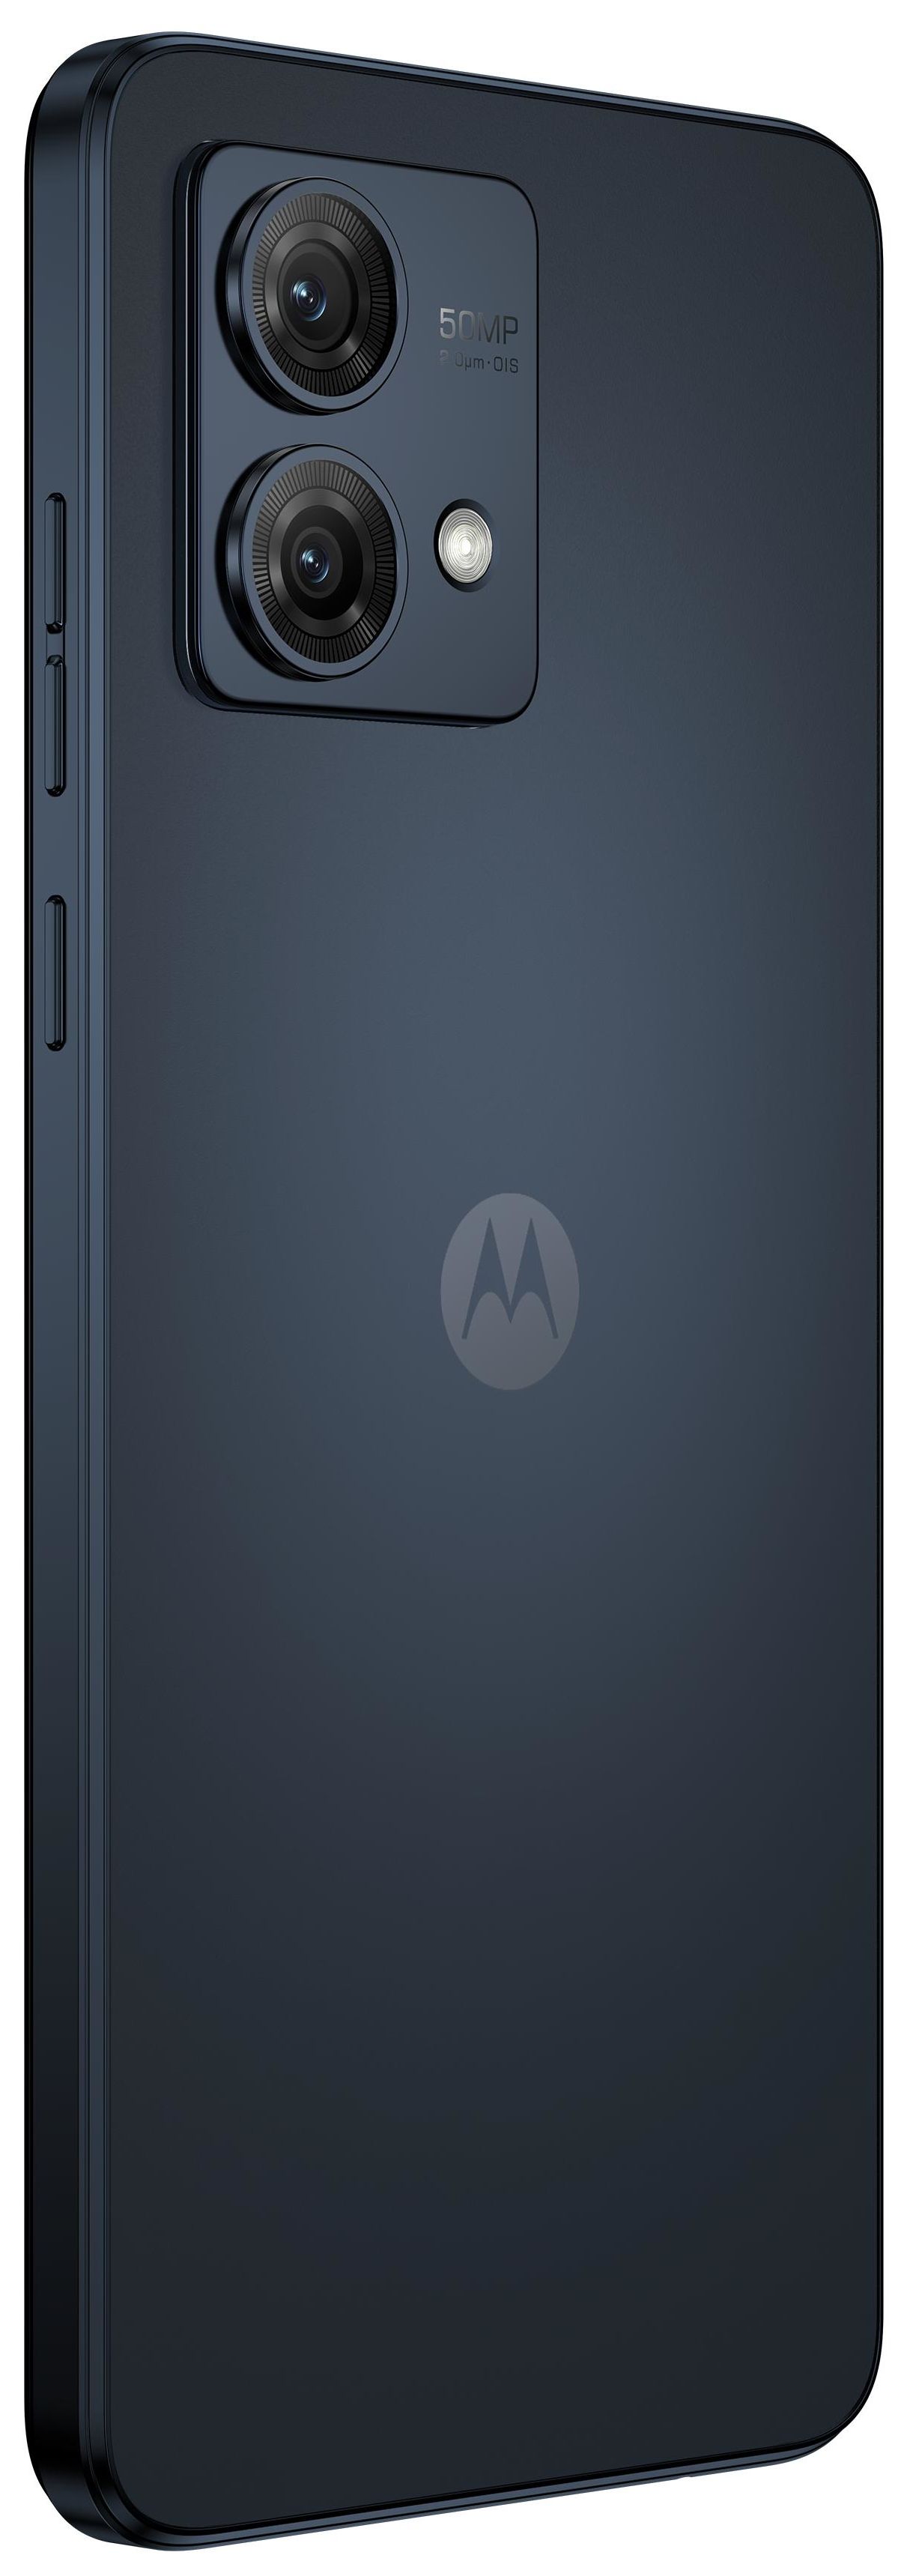 256 Zoll) (Midnight MP GHz 50 Moto Sim Blue) (6.5 Dual Motorola Dual 5G G84 von Android 16,6 GB Smartphone Technomarkt Kamera expert cm 2,2